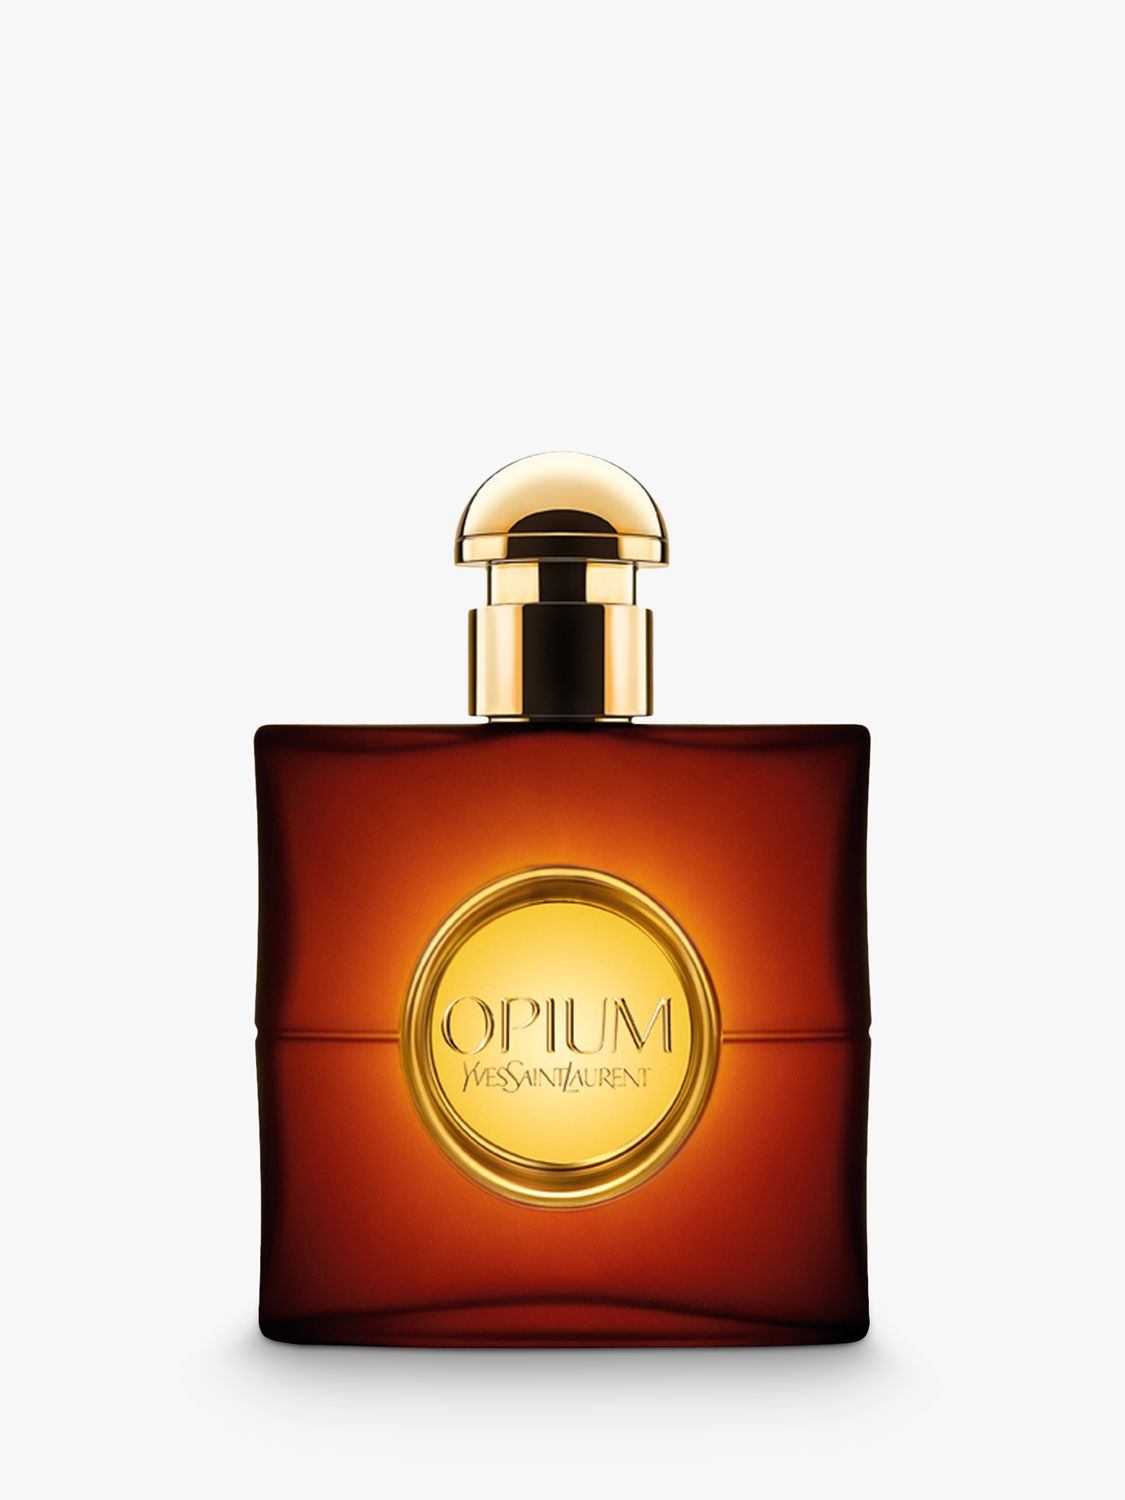 Yves Saint Laurent Opium Eau de Toilette, 30ml 1